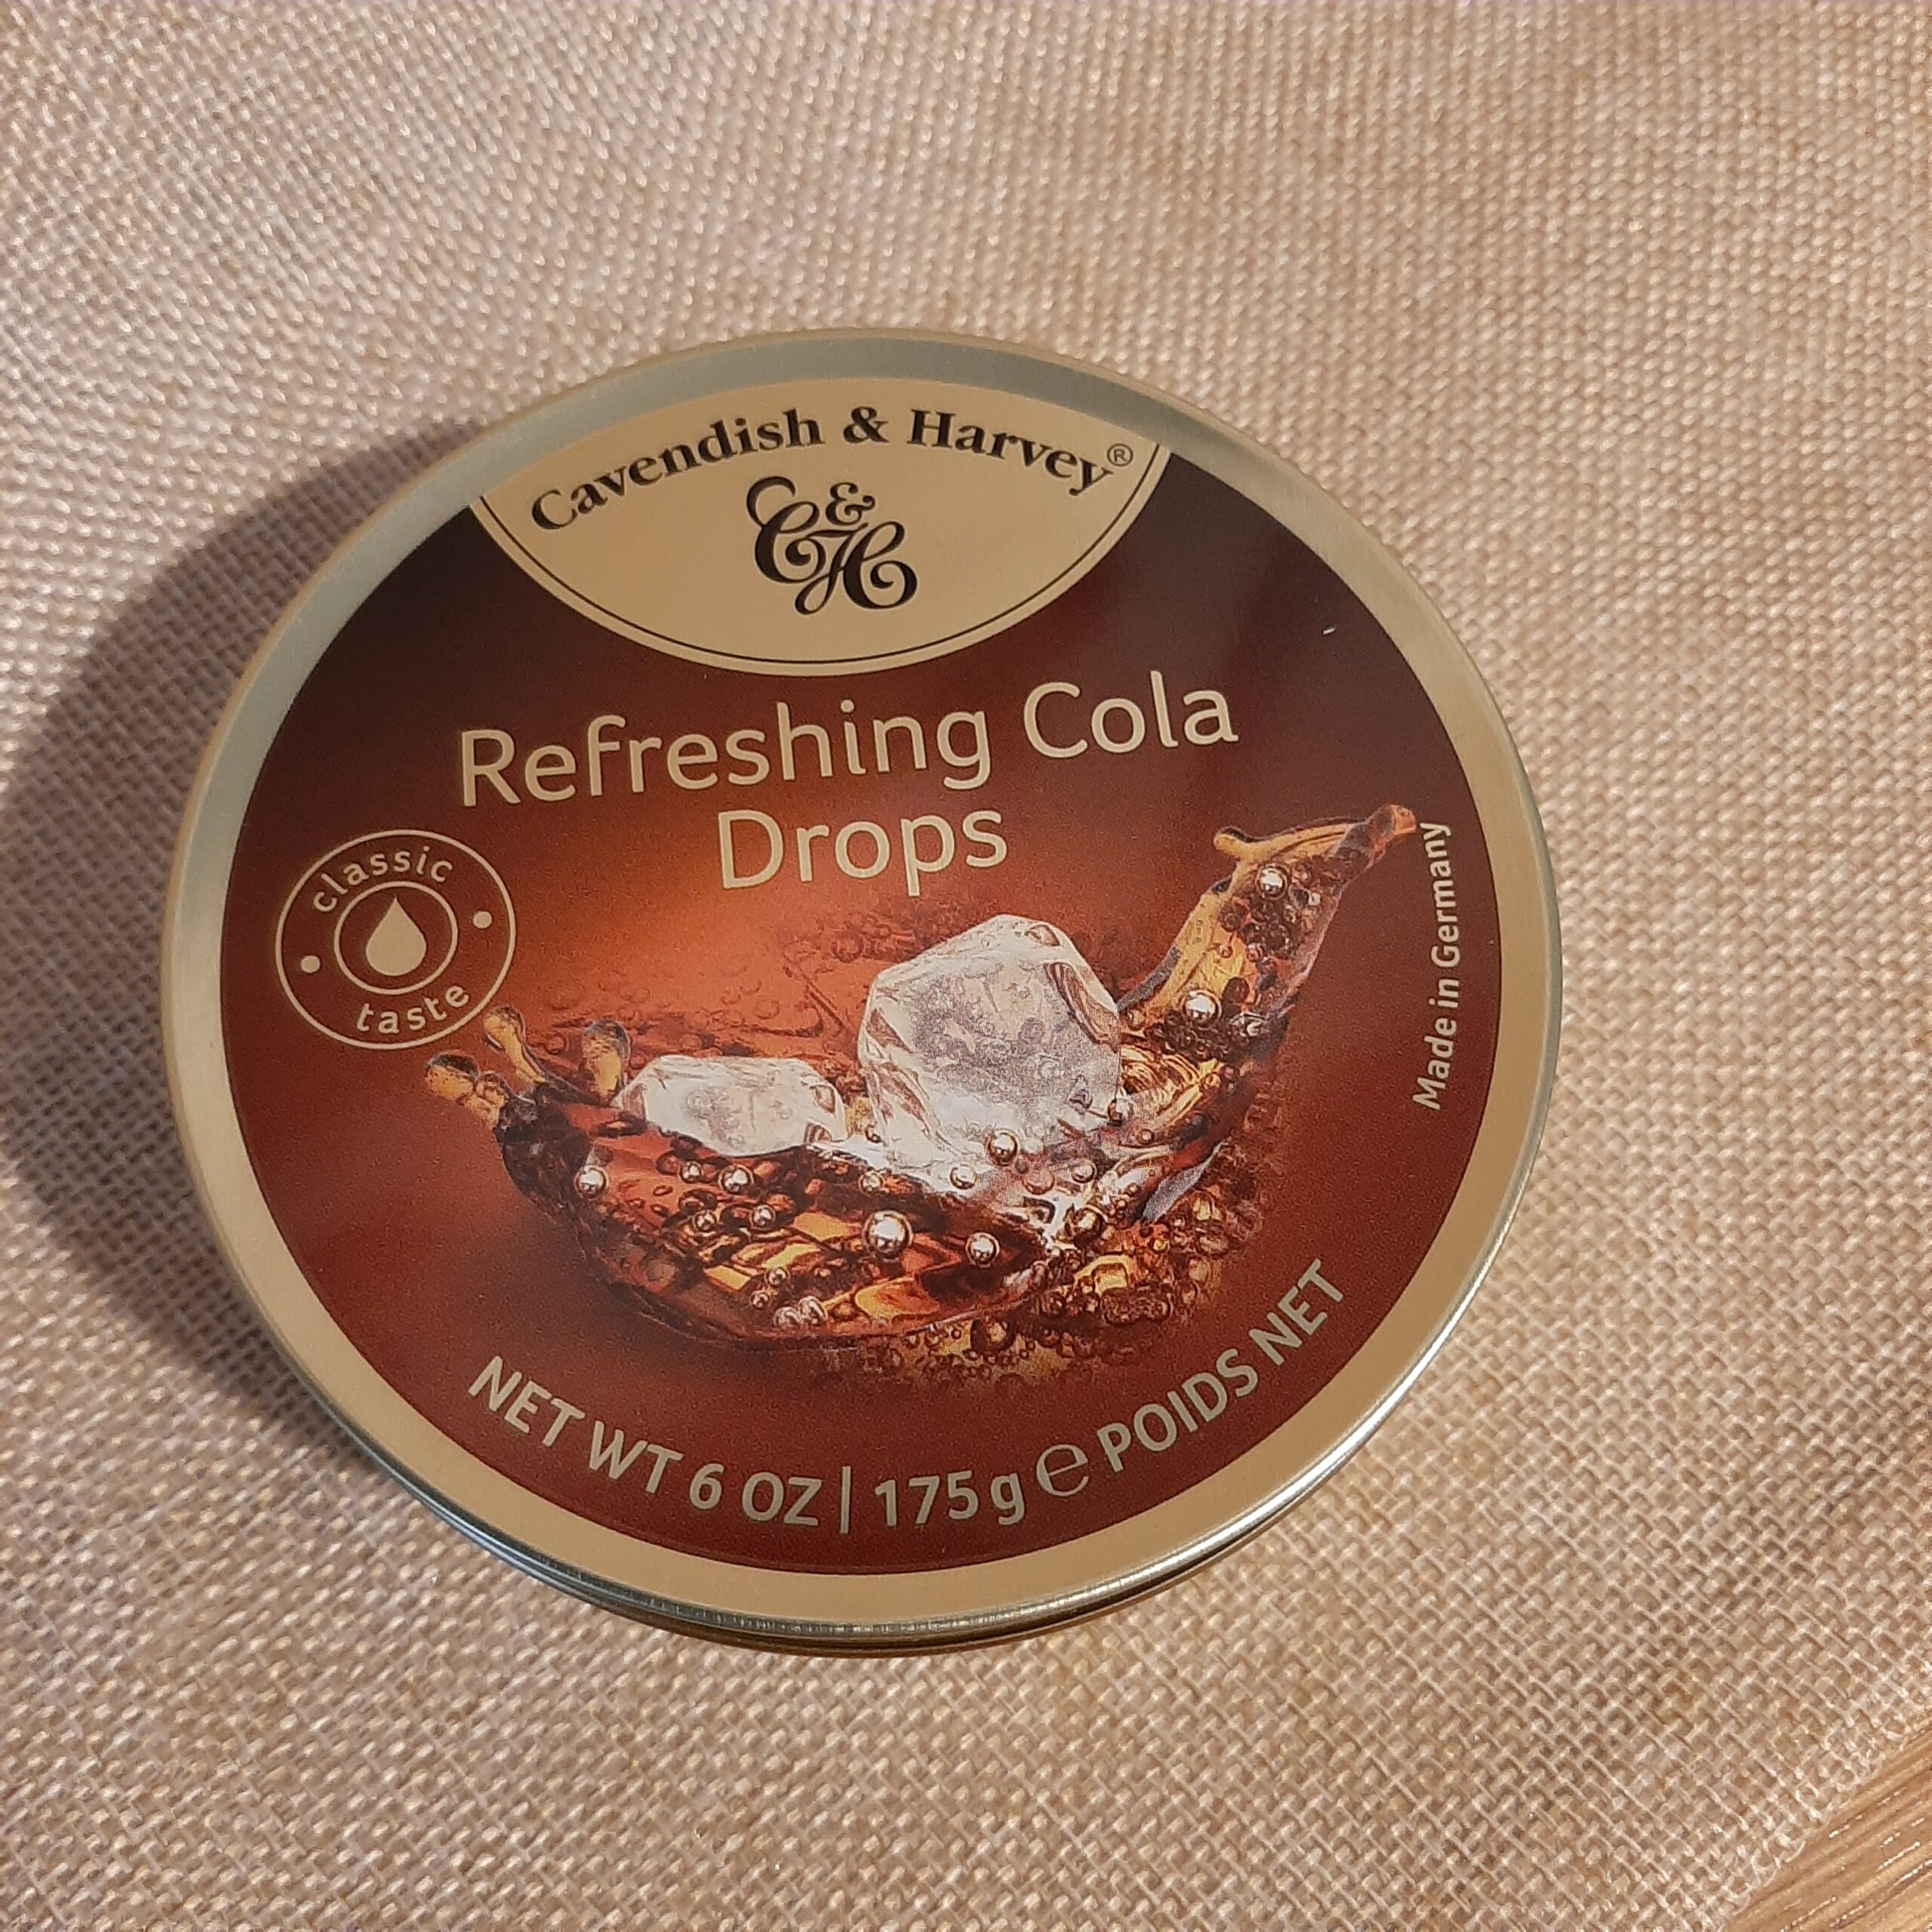 Dropsy refreshing cola 200g.